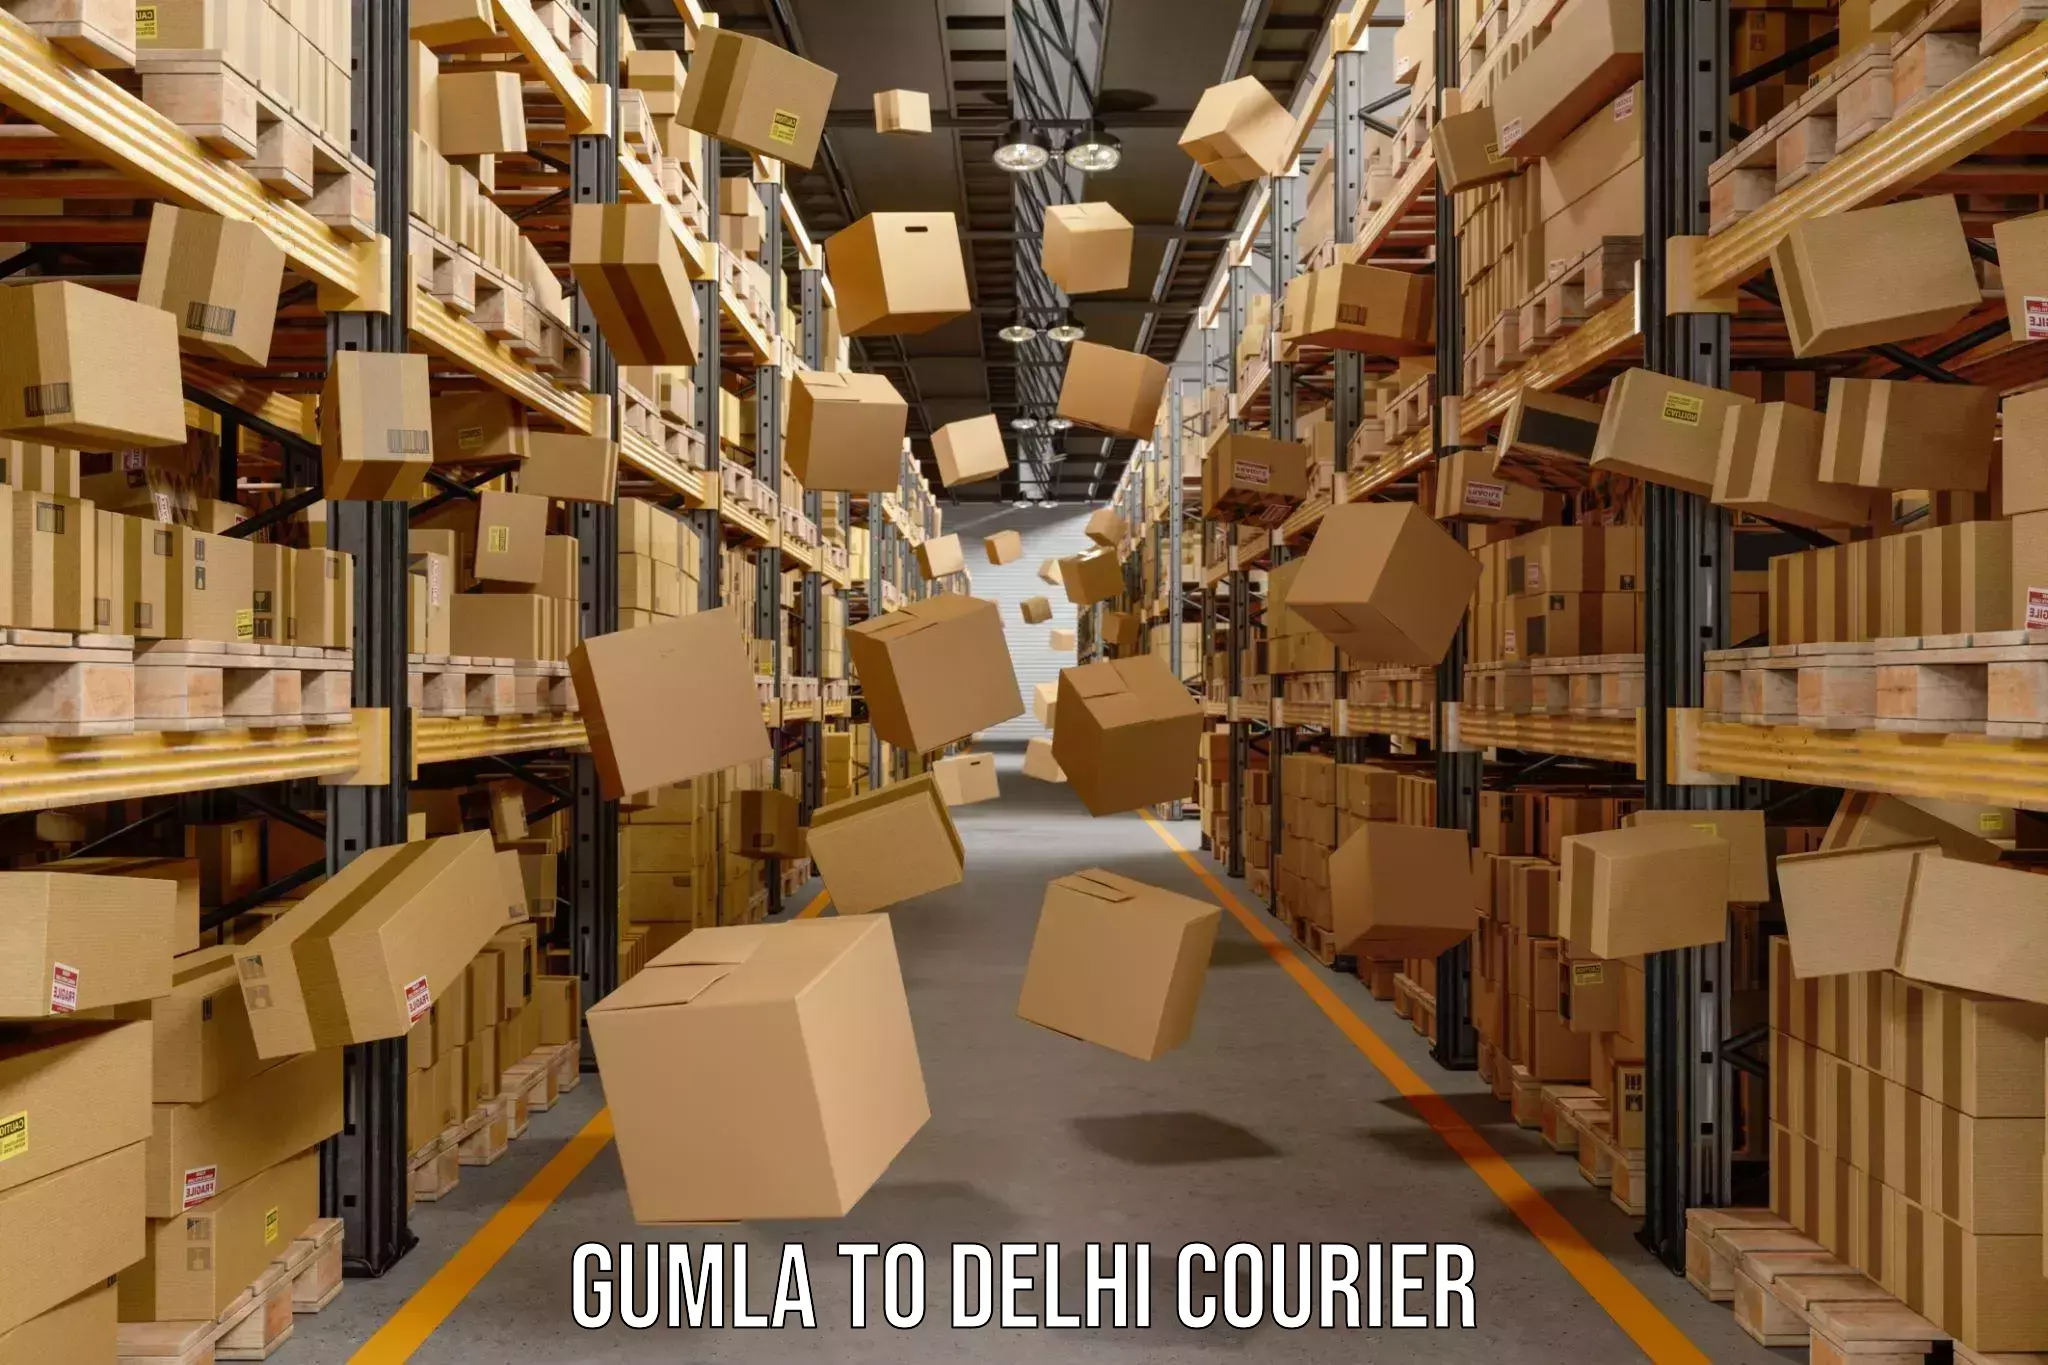 Courier service innovation in Gumla to Sansad Marg